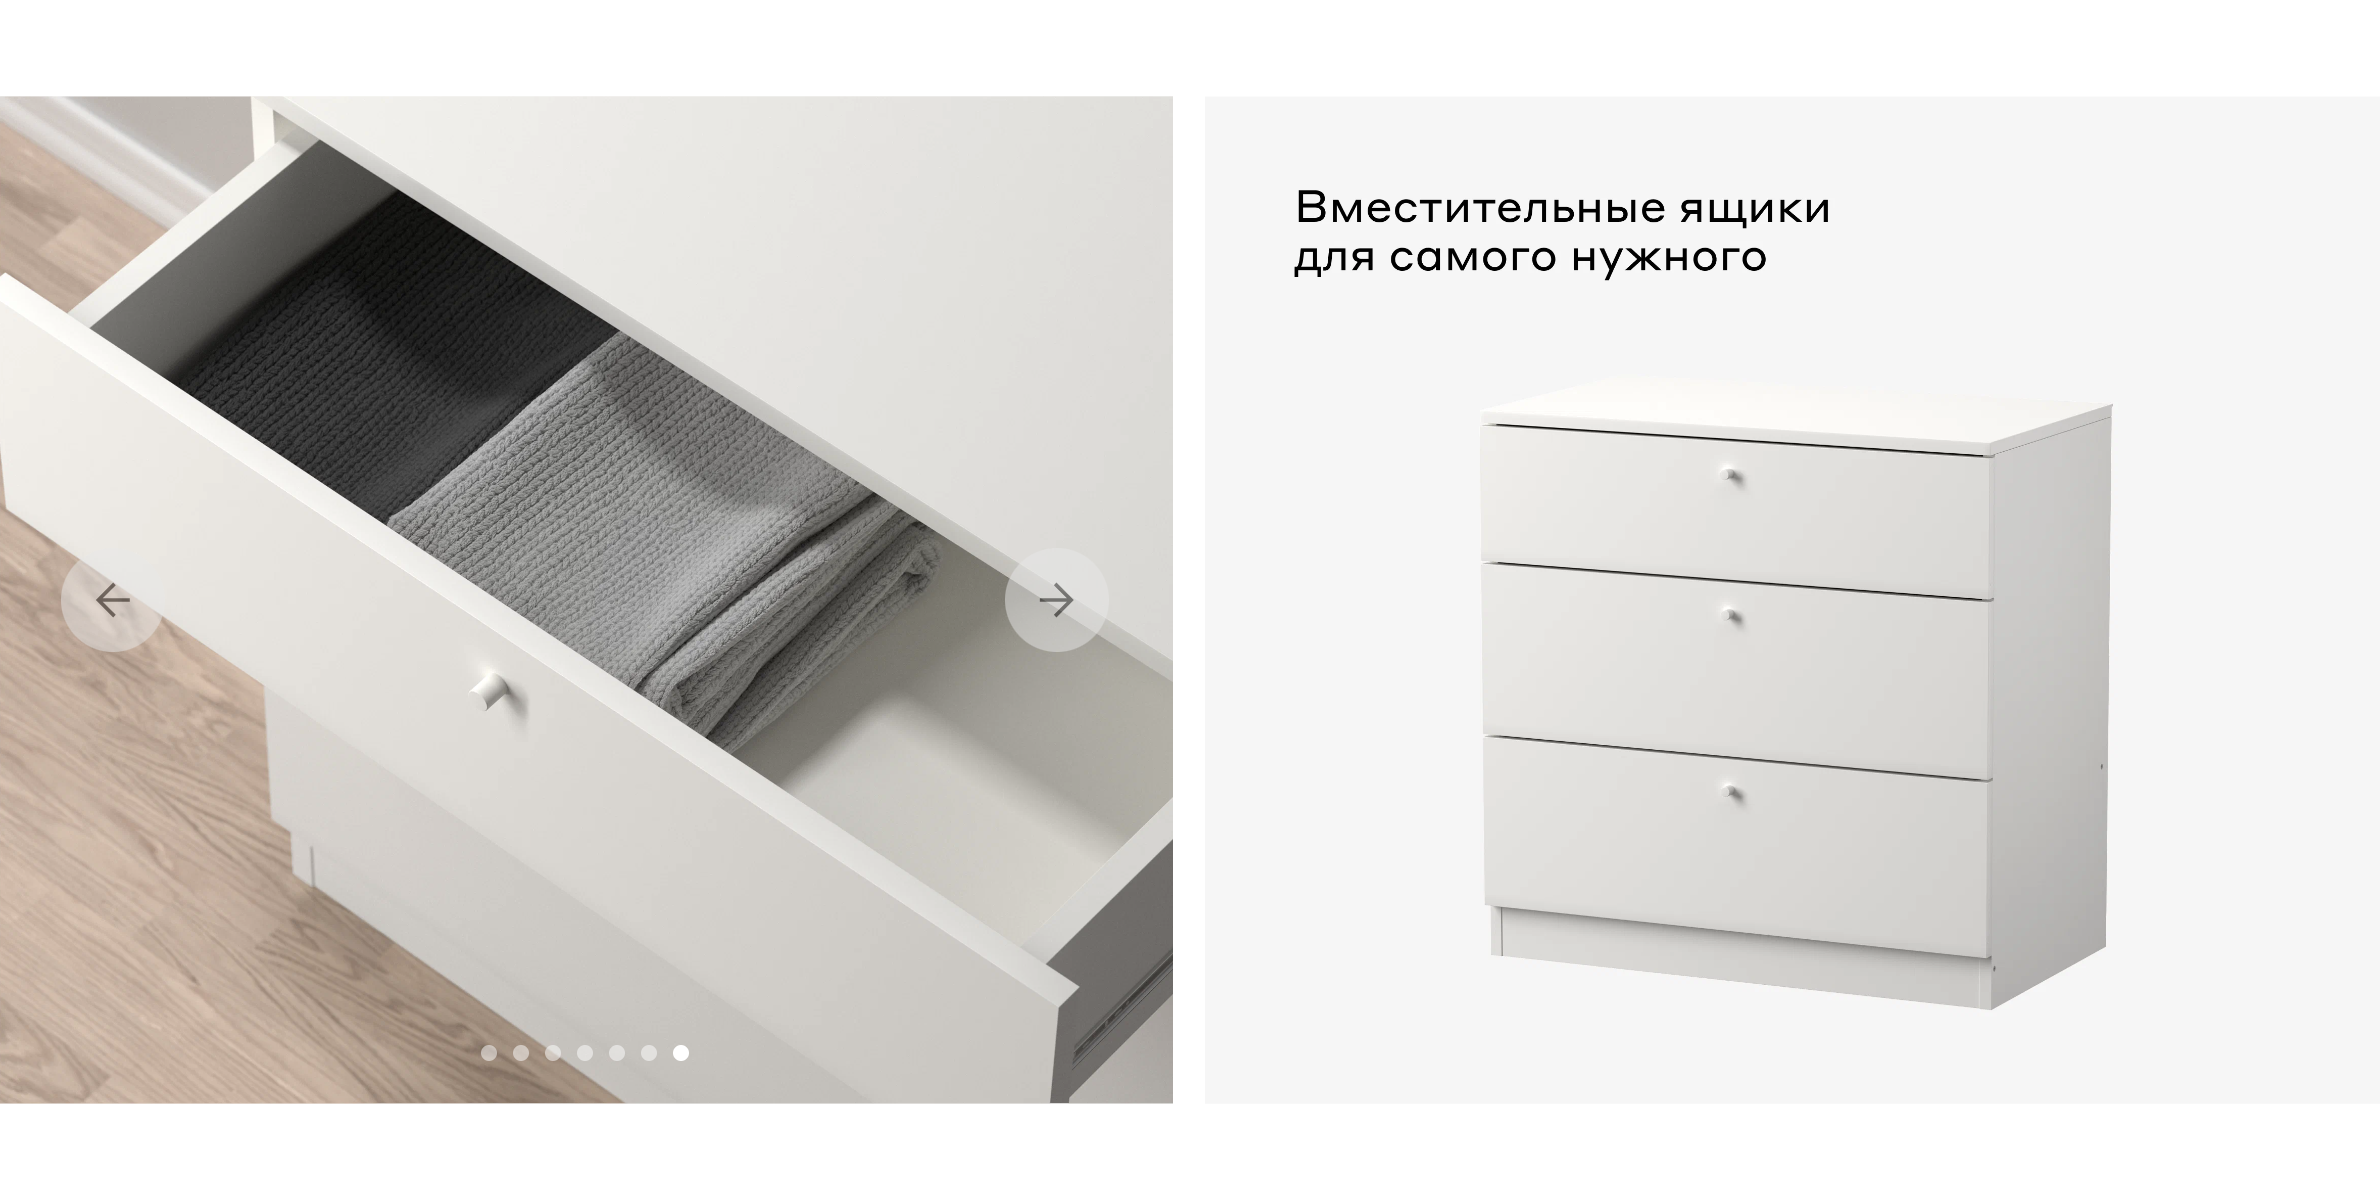 Примеры мебели Pragma. Источник: market.yandex.ru